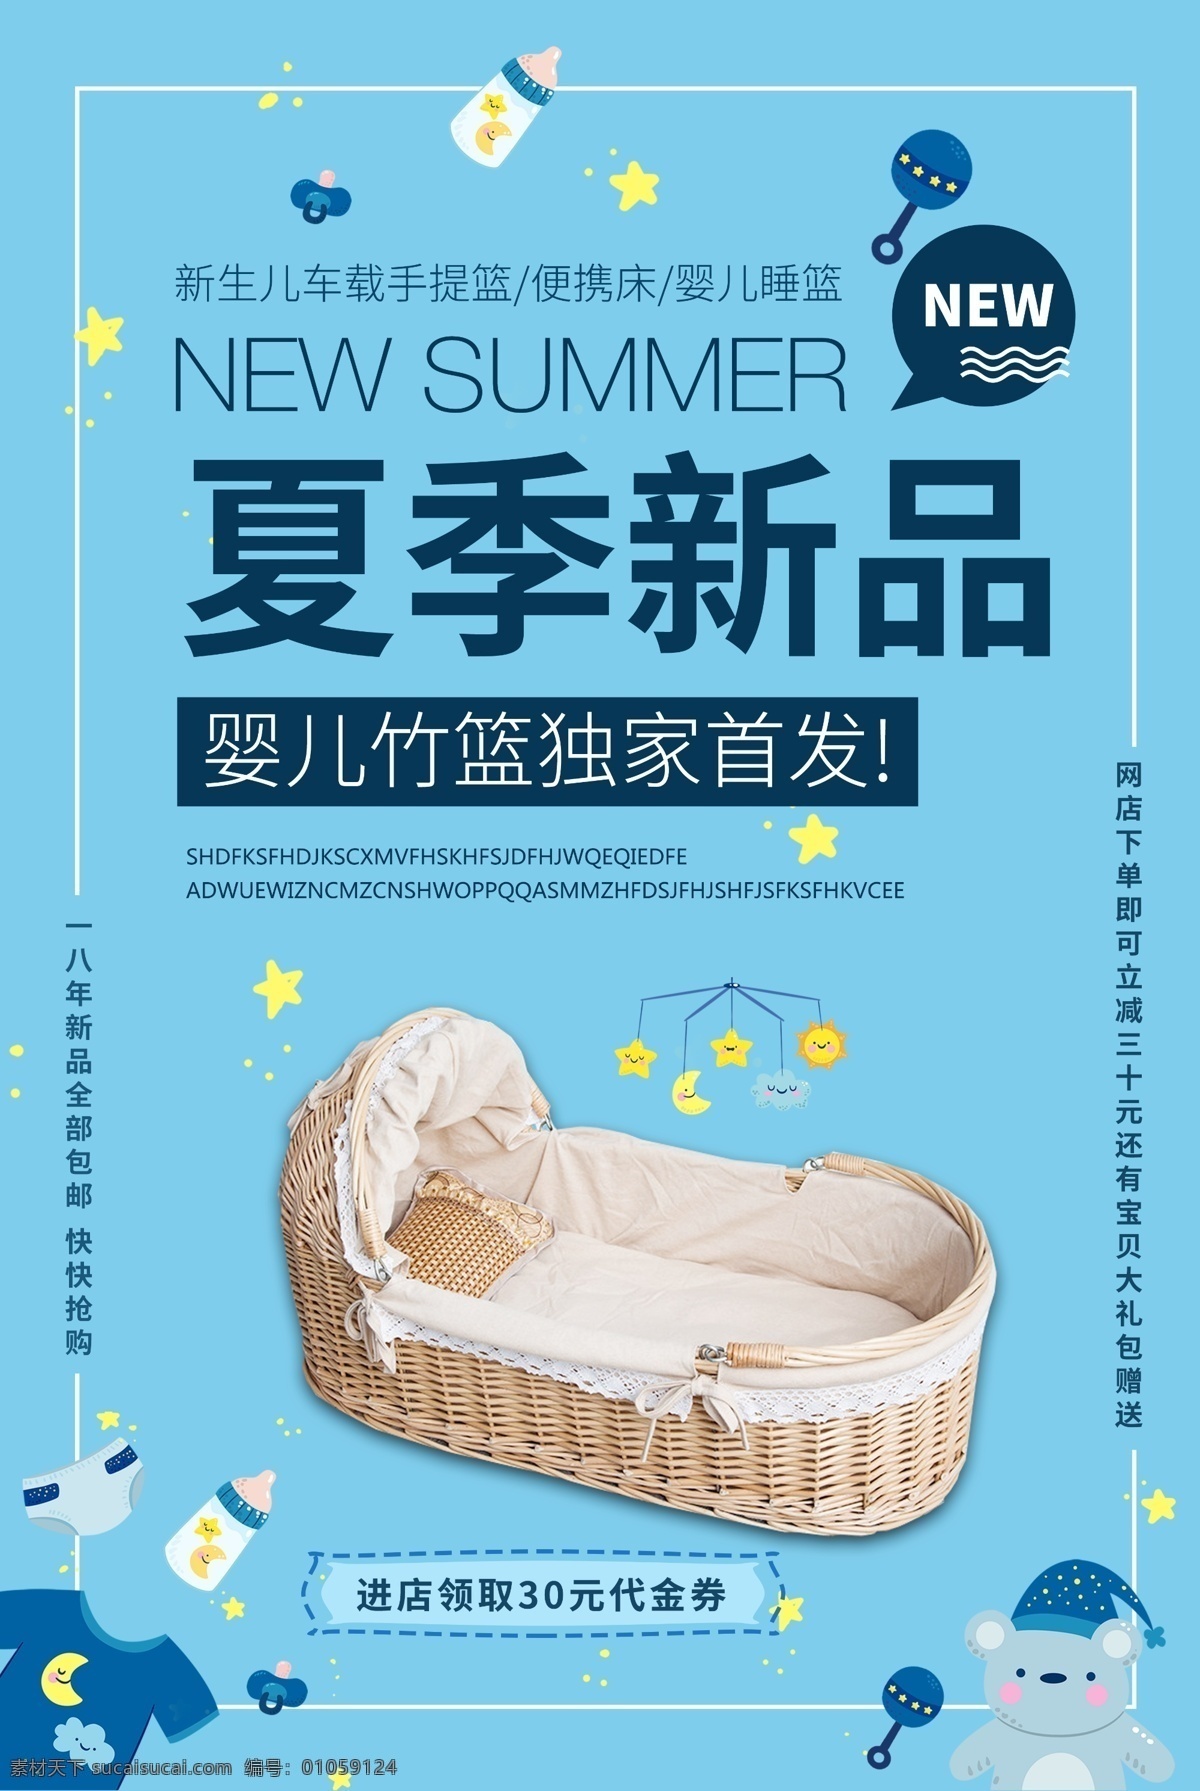 婴儿床 促销 海报 婴儿床特价 婴儿床上新 宝贝床 宝宝床 新生儿床 欧式婴儿床 新生儿 手提 便携式 小 床 车载 手 提篮